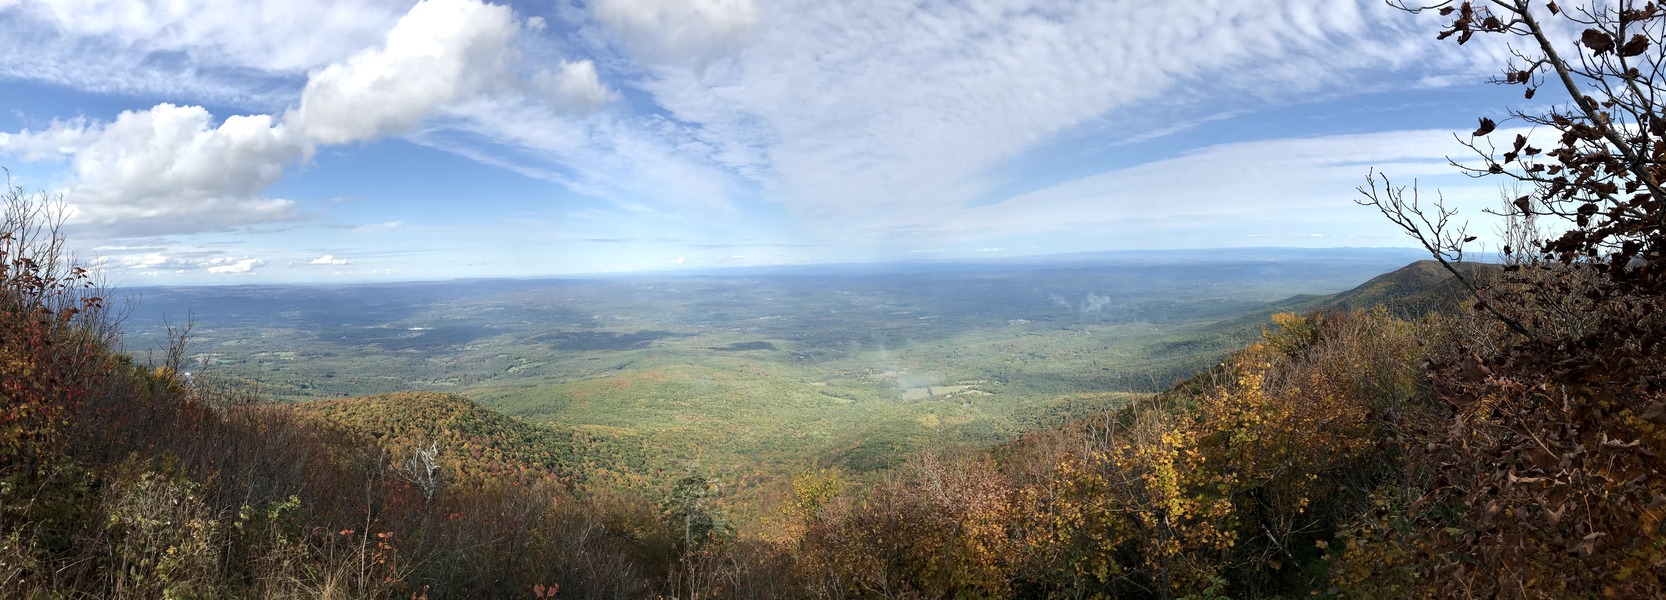 Panorama from Windham High Peak